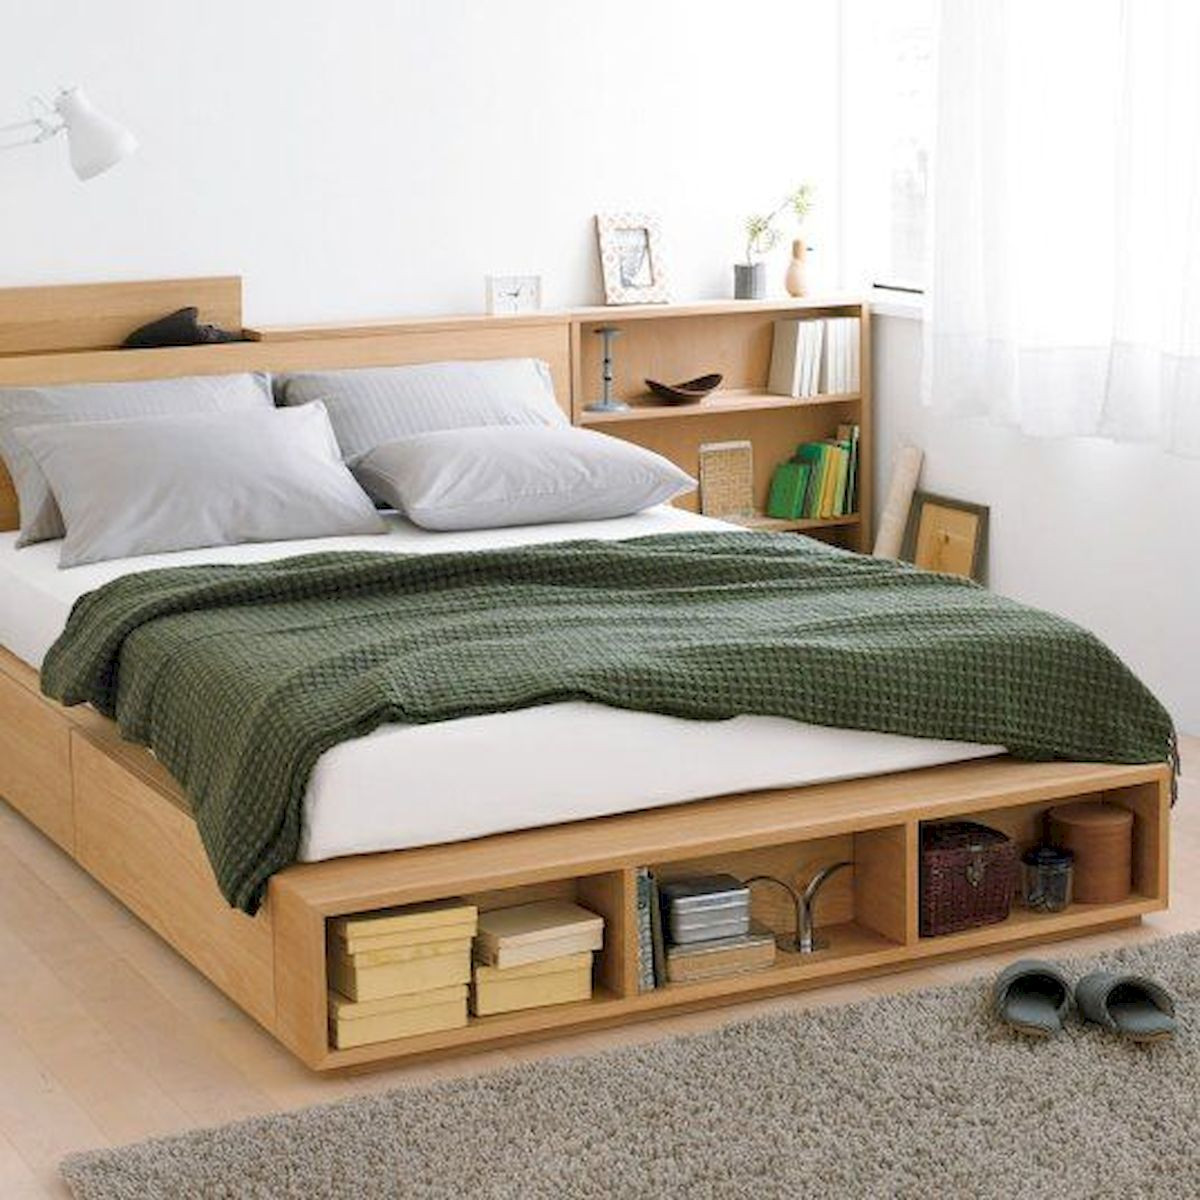 Diy Bedroom Storage Ideas
 60 Easy and Brilliant DIY Storage Ideas For Small Bedroom